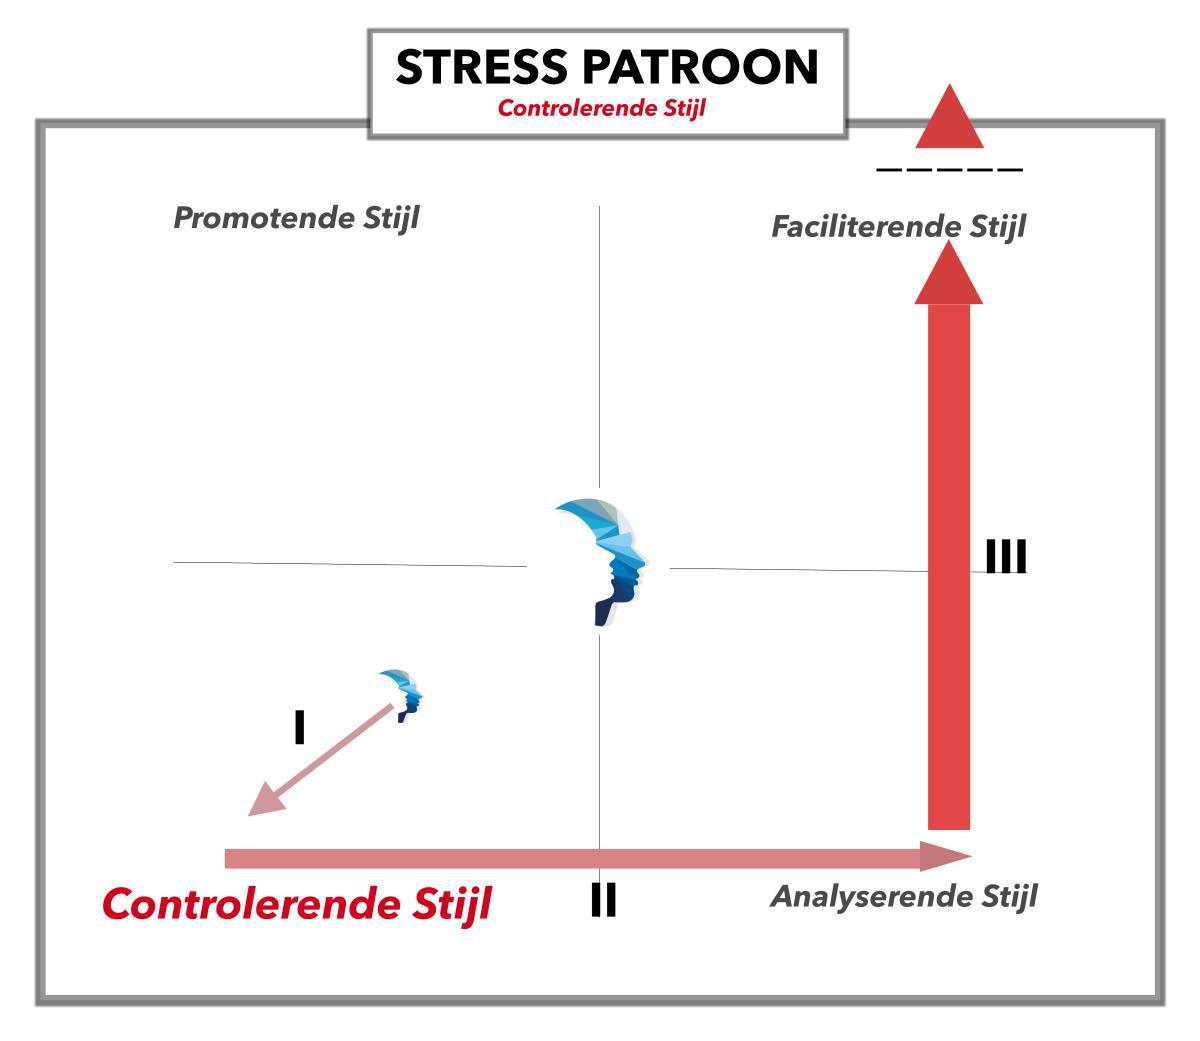 Stressspatroon - Controlerend